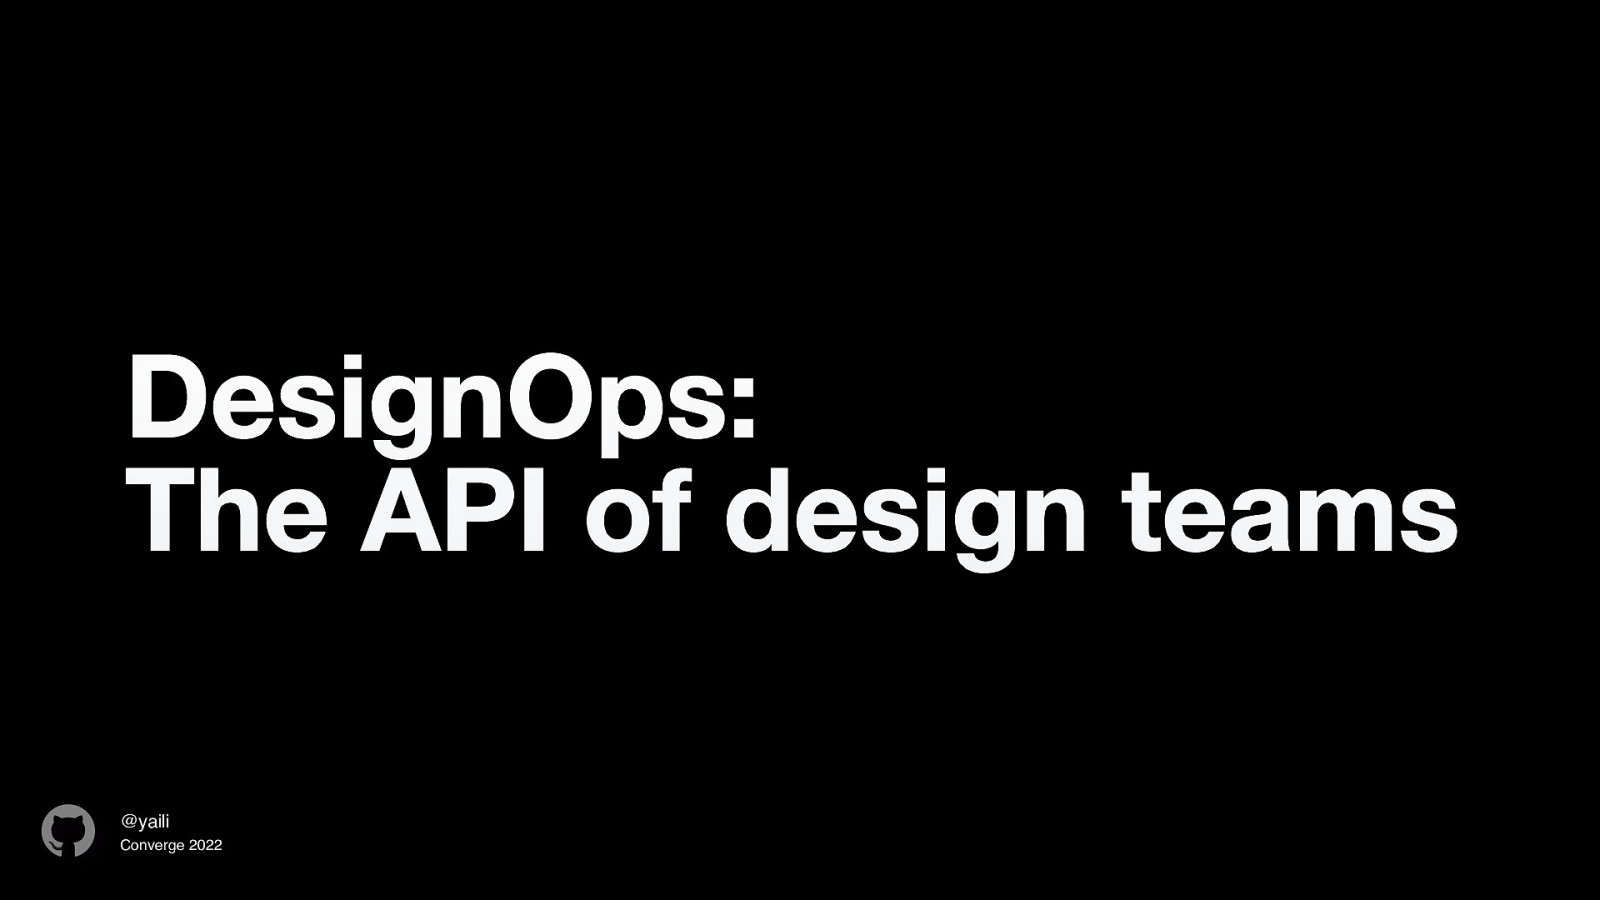 DesignOps: The API of design teams by Inayaili León